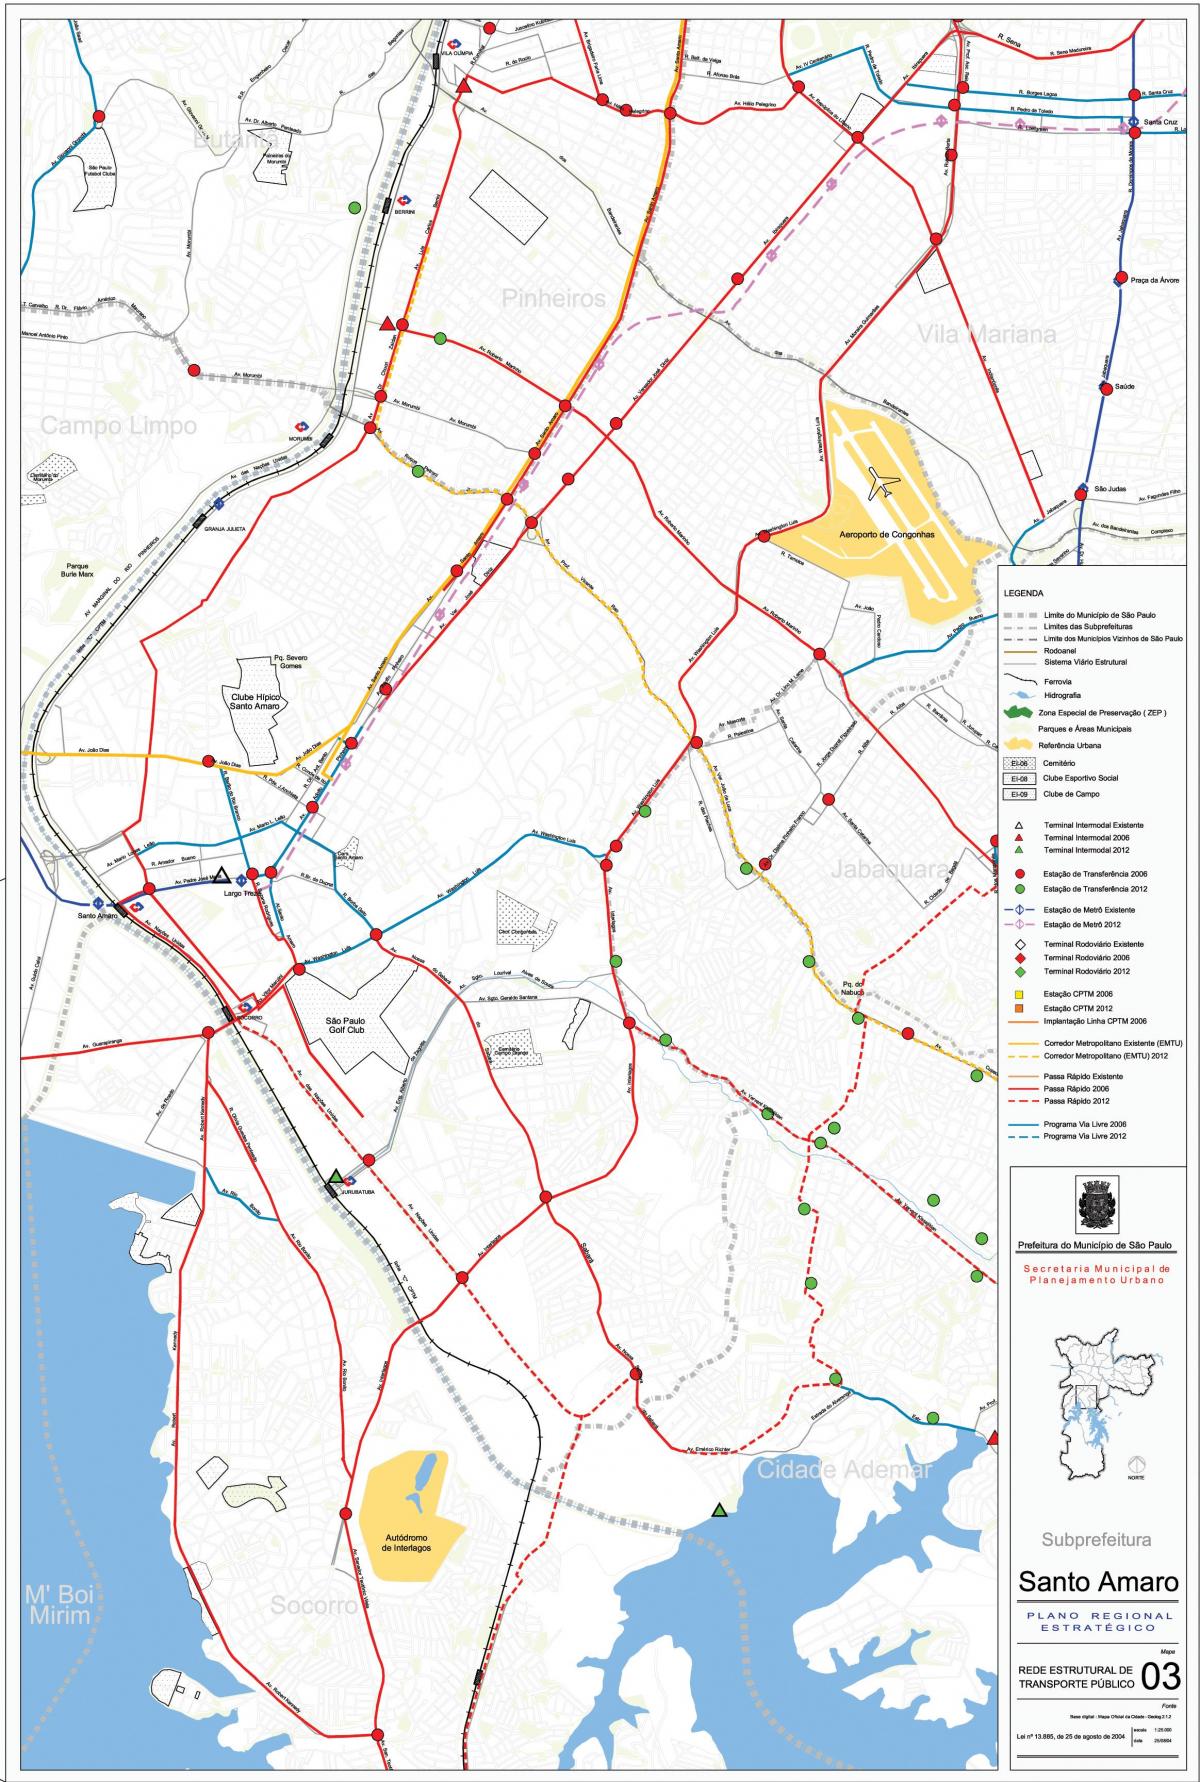 Mapa de Santo Amaro Galicia - Público de transportes